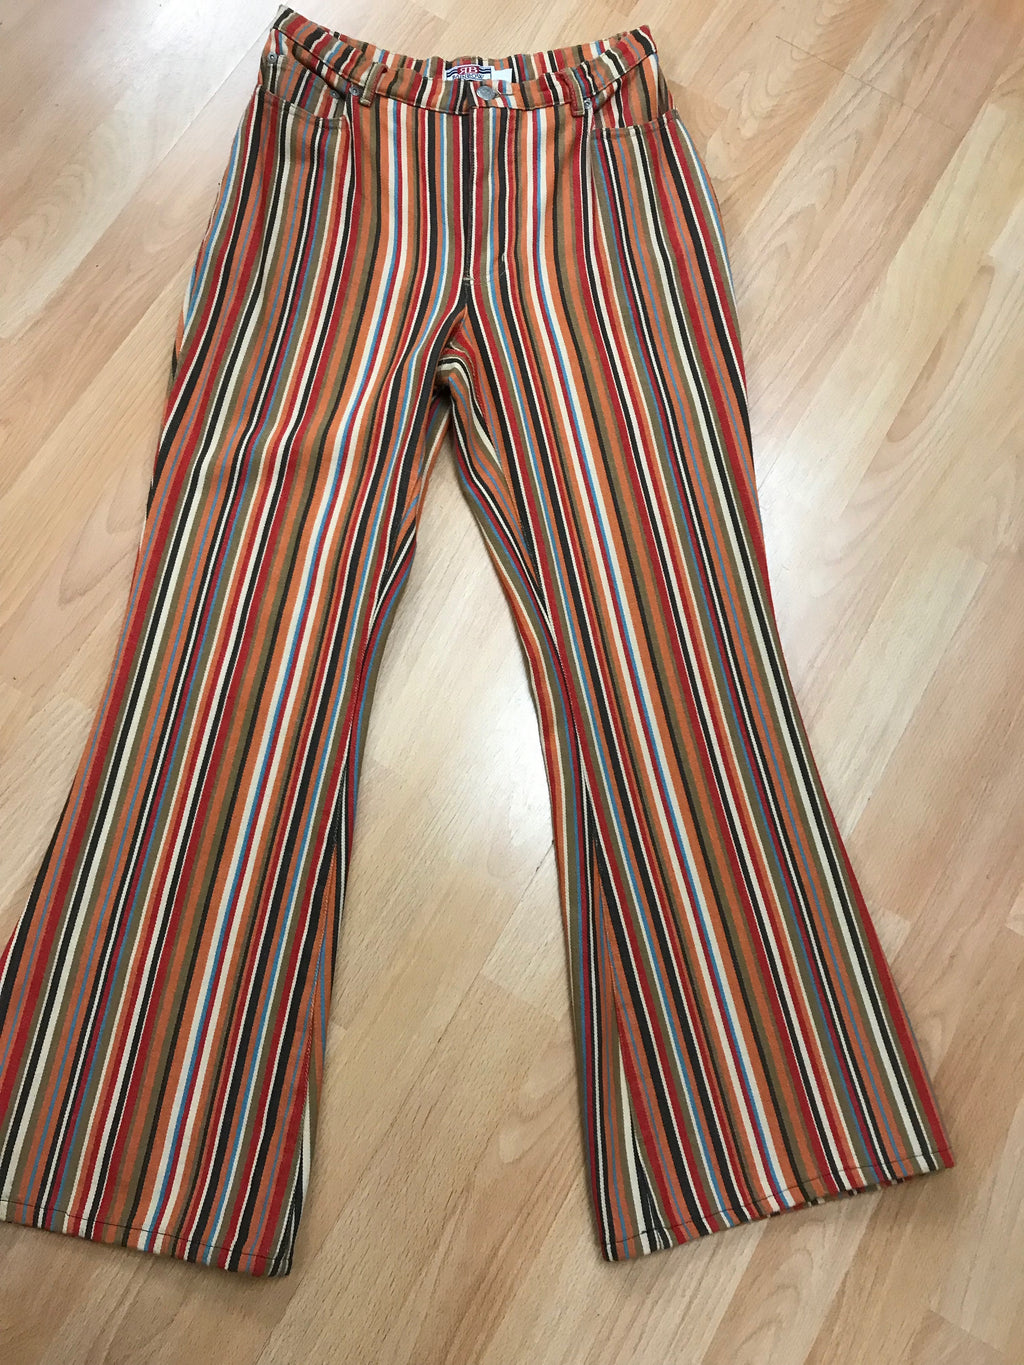 Vintage Hose im 70er Jahre Stil Gr.36